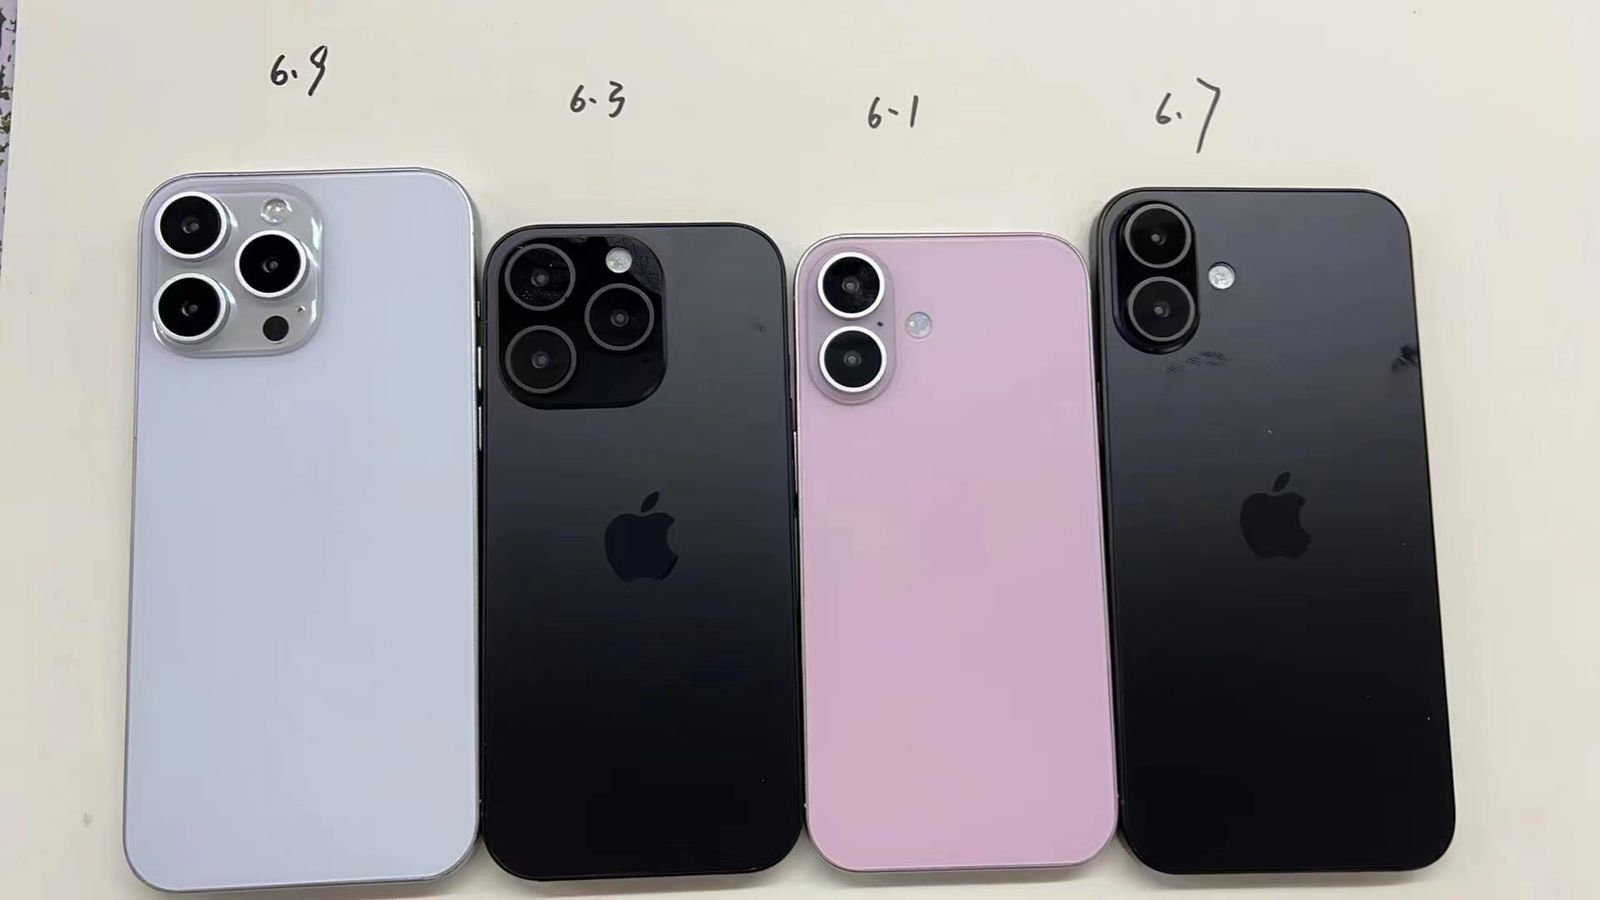 Desde iPhoneIslam.com, cuatro modelos de iPhone dispuestos de izquierda a derecha: iPhone 13 pro max en plateado, iPhone 12 en negro, iPhone 11 en rosa y iPhone XR en negro, visto desde atrás sobre un fondo claro.